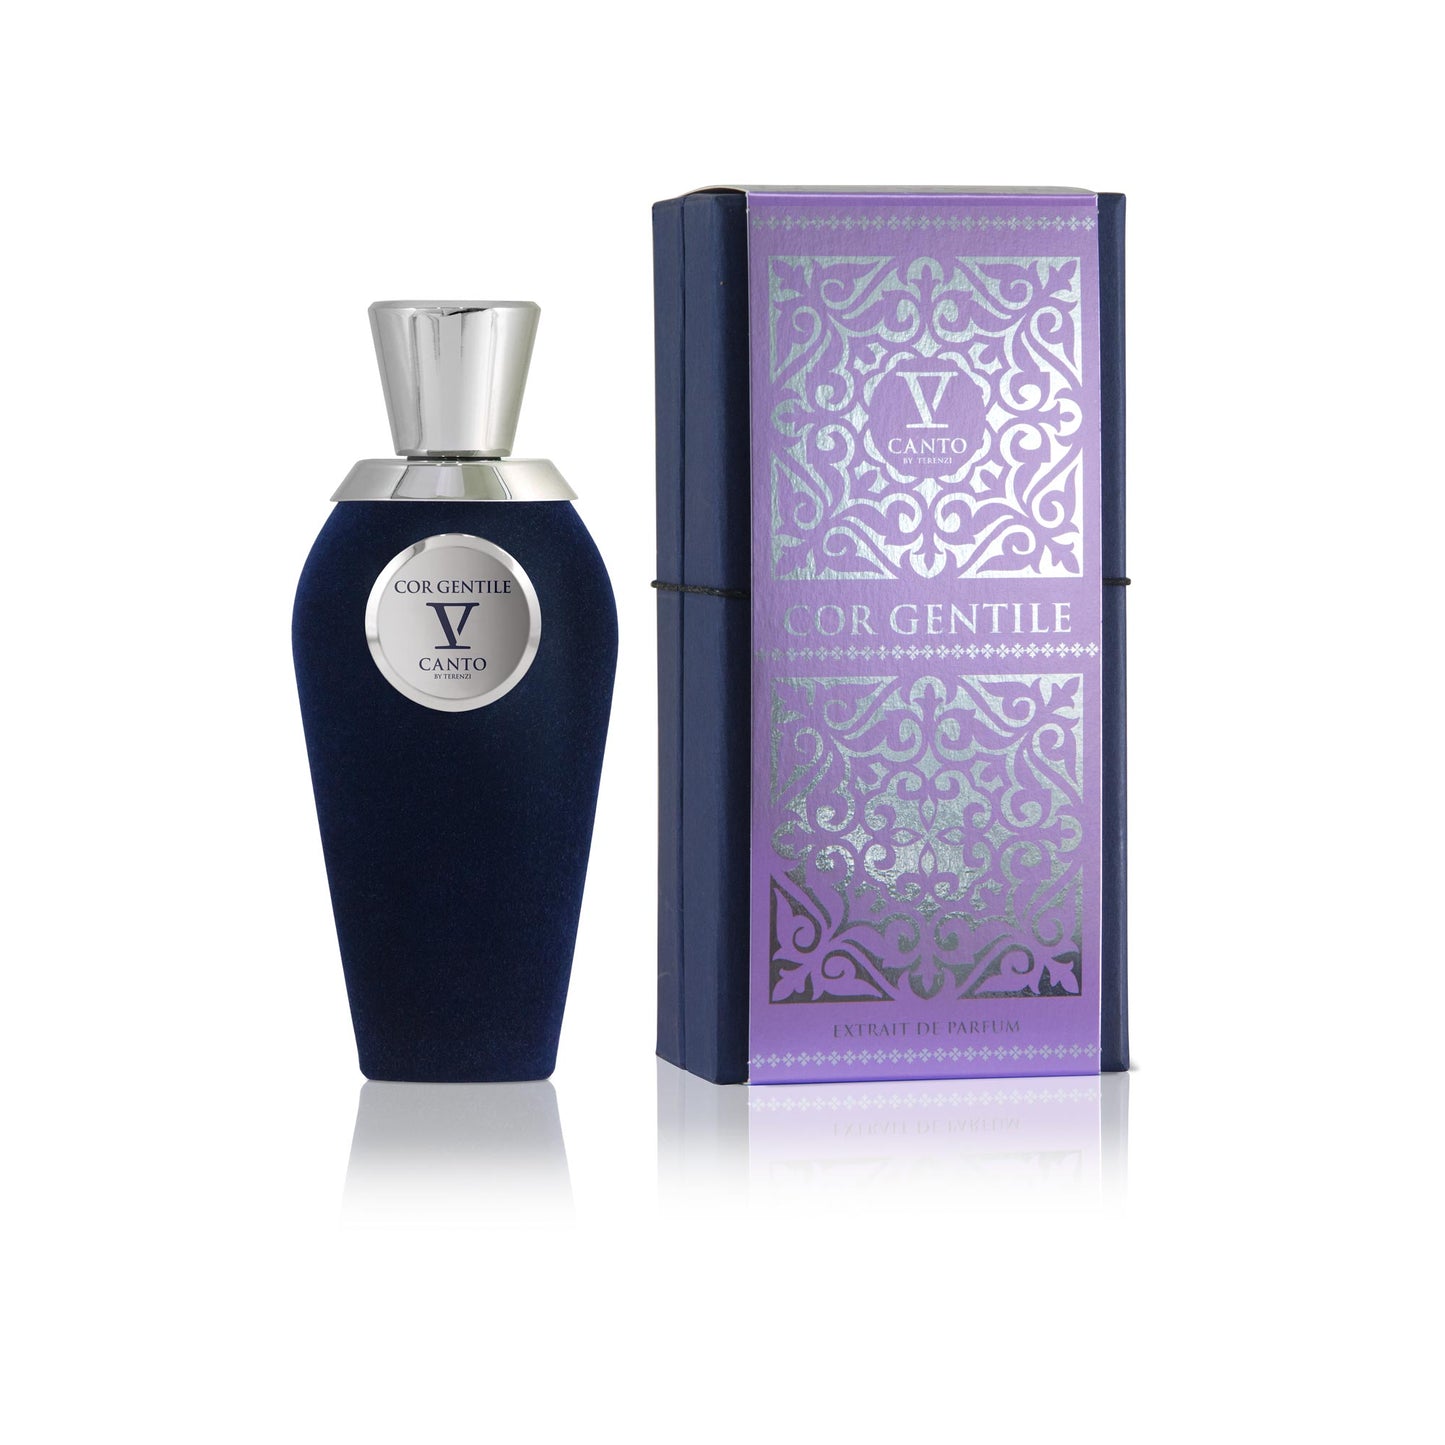 COR GENTILE 1.5ml Sample Vial - Extrait de Parfum